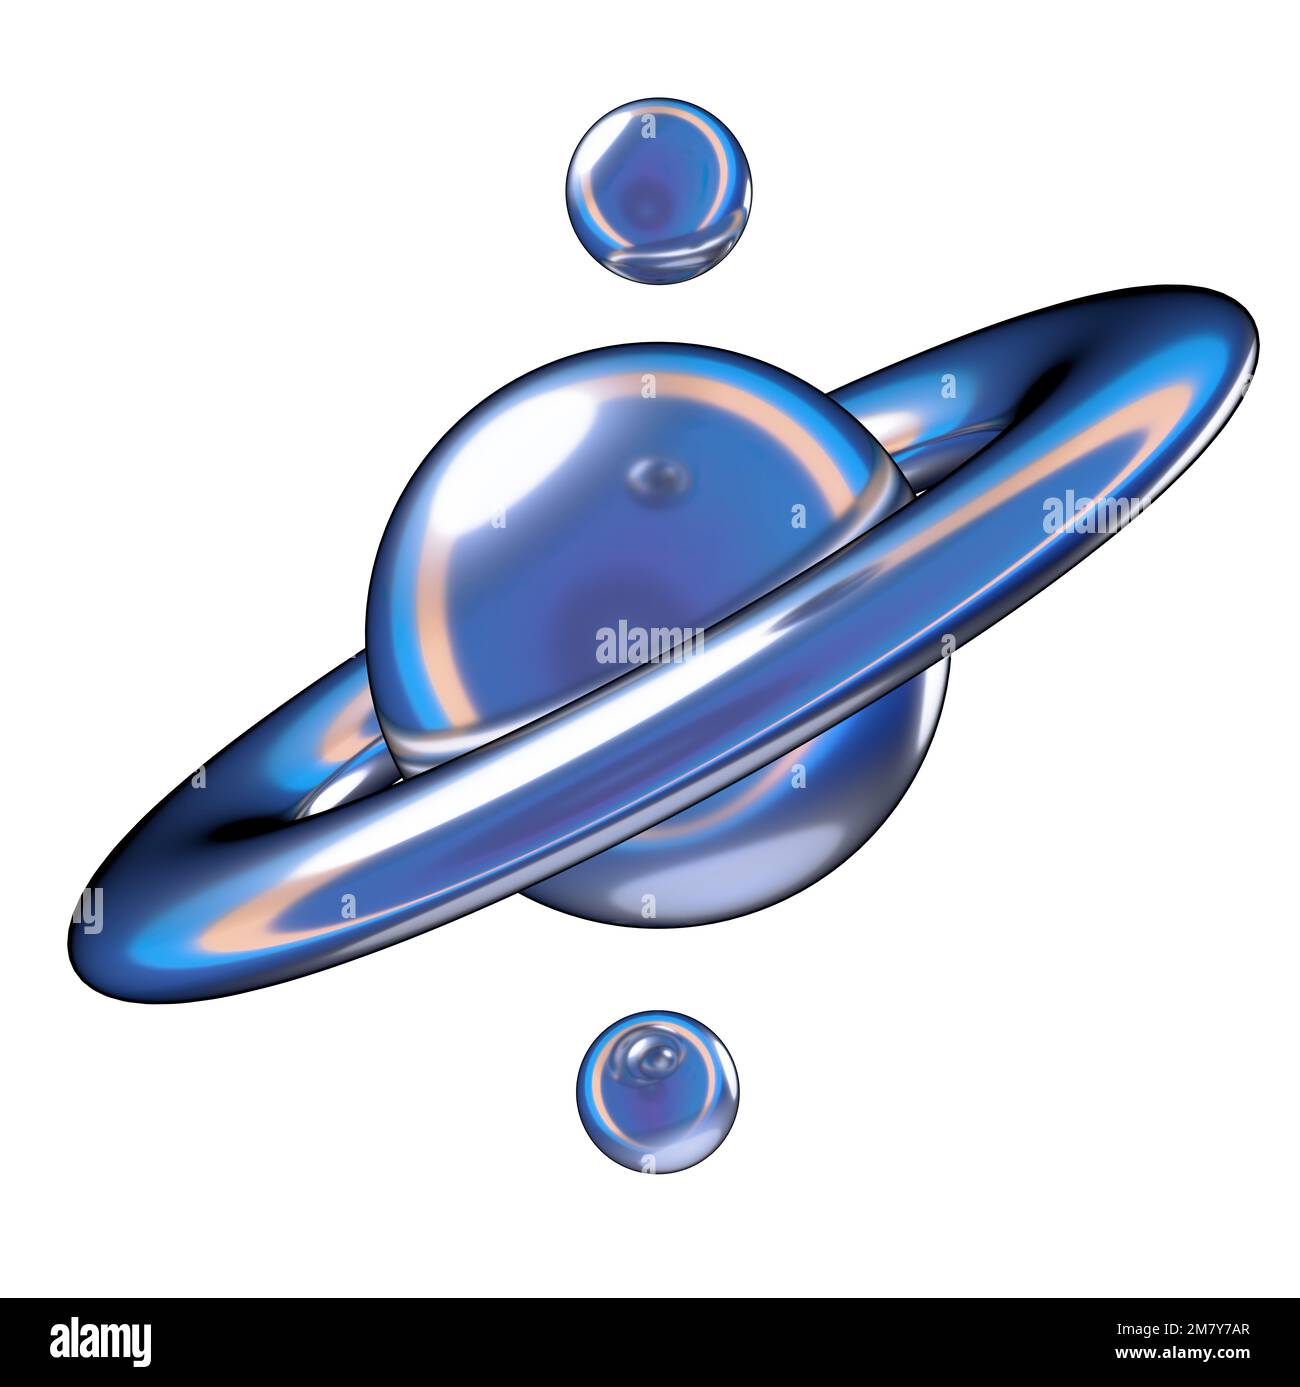 Blue Metallic Saturn – Modellartige zeitgenössische Kunstgeometrie Abstraktes, dramatisches, leidenschaftliches, luxuriöses und exklusives, isoliertes 3D-Rendering-Grafikdesign Stockfoto